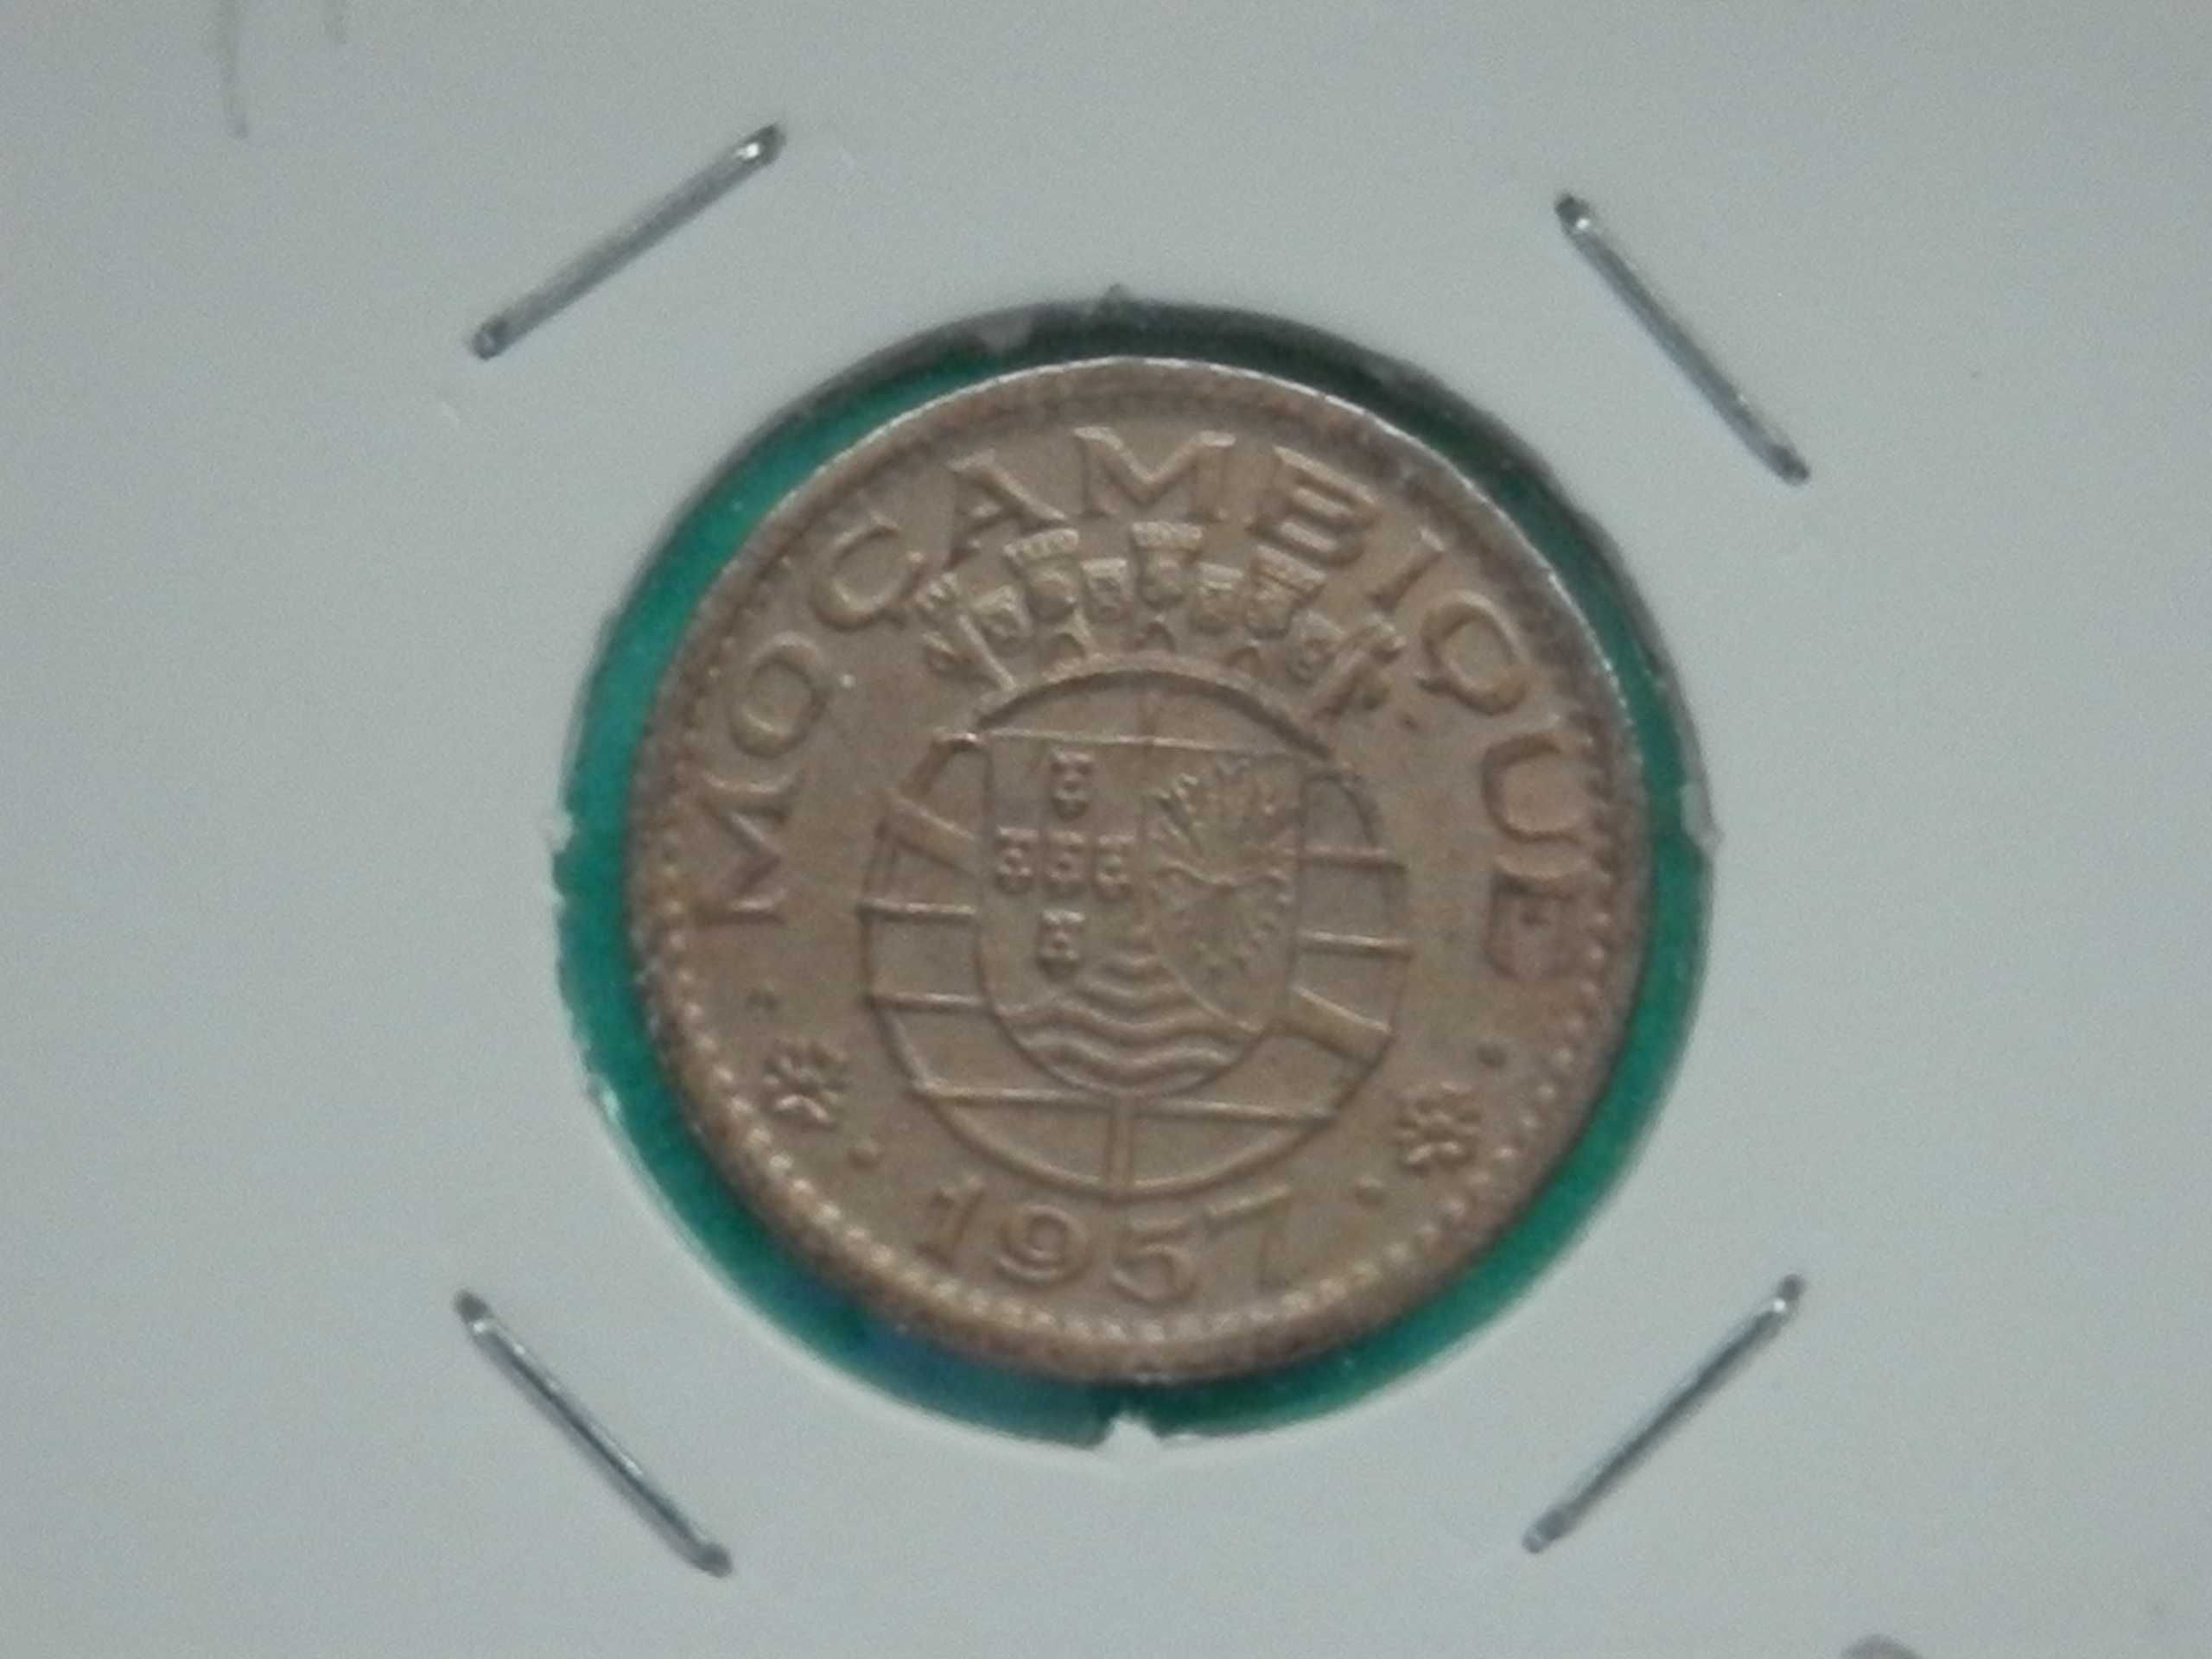 501 - Moçambique: 50 centavos 1957 bronze, por 1,50